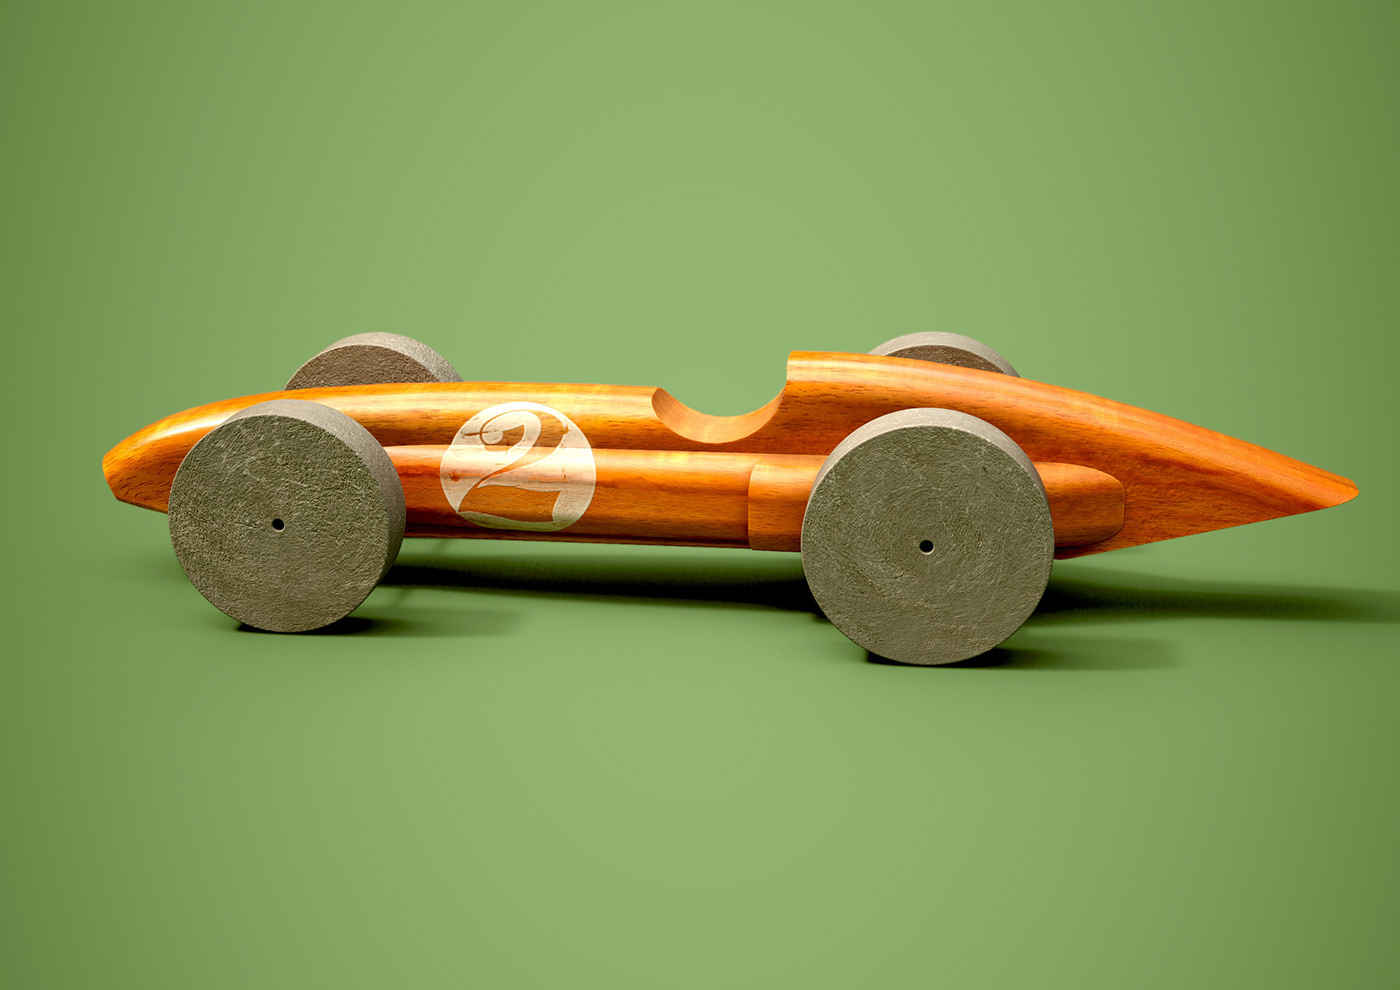 Alan Mattano car FERRARI toy wooden